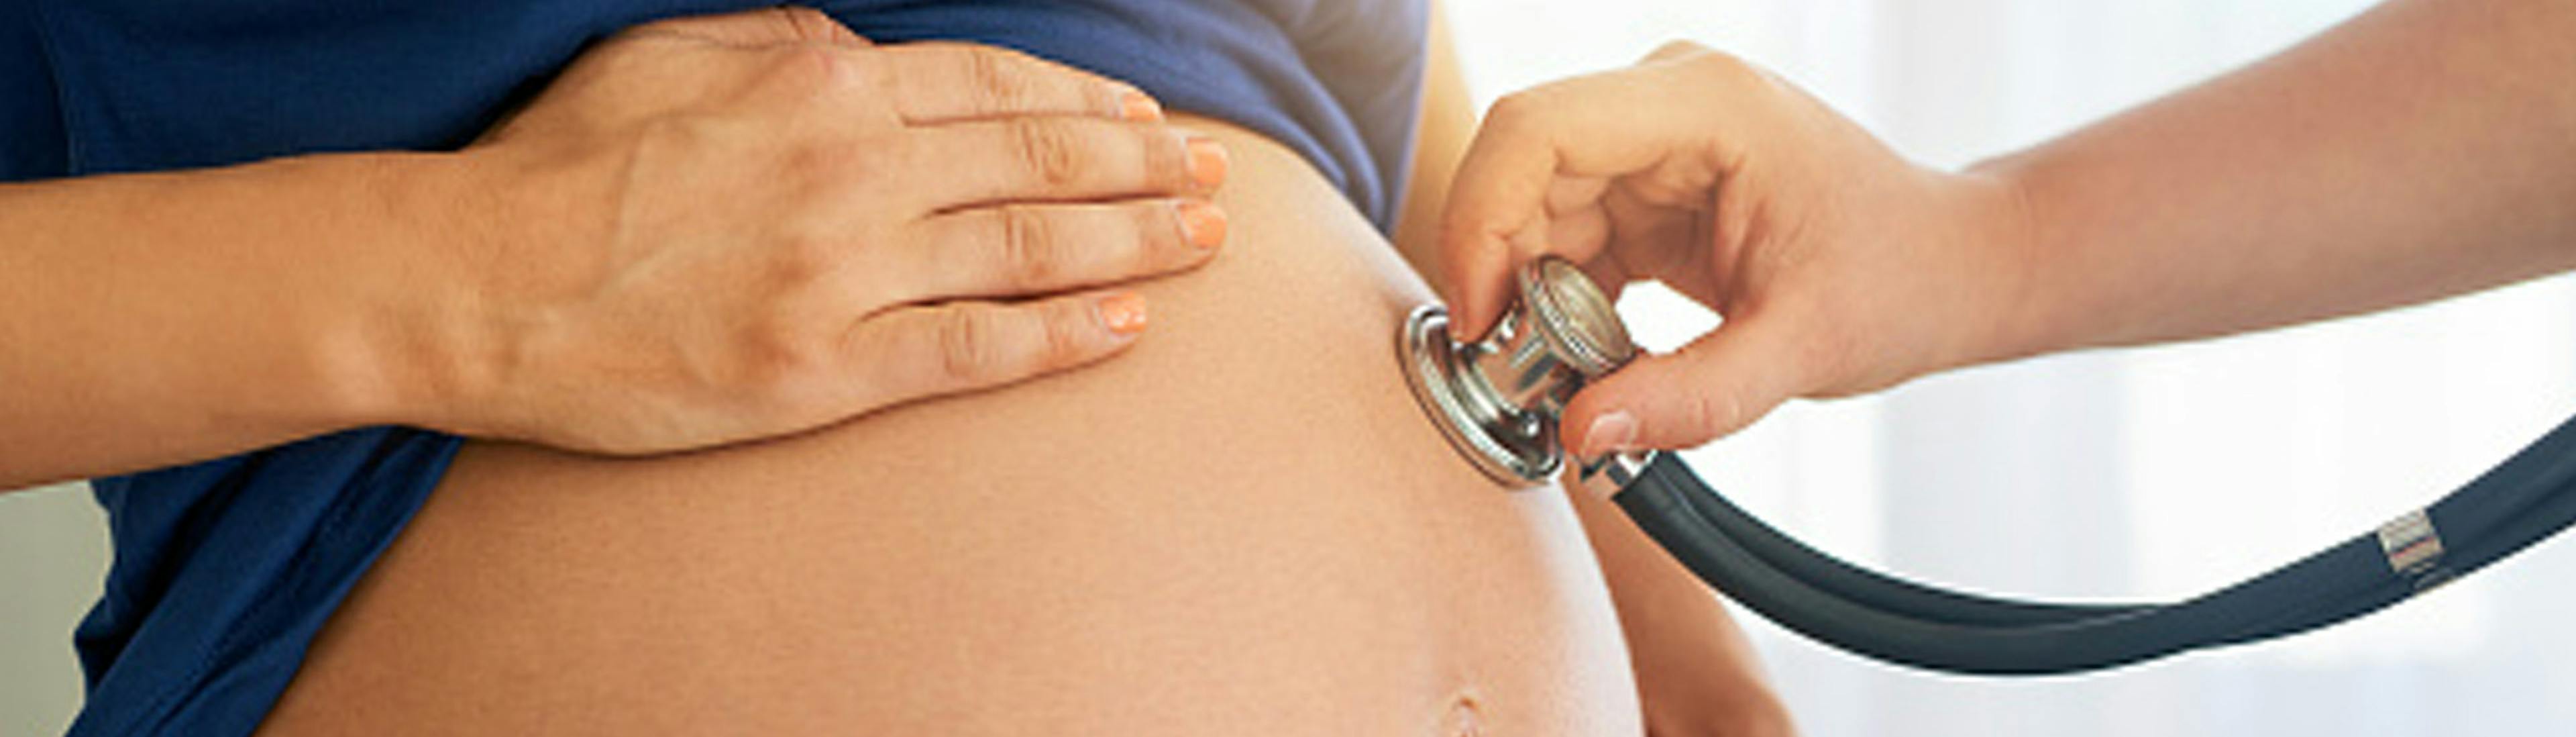 contraction uterine grossesse